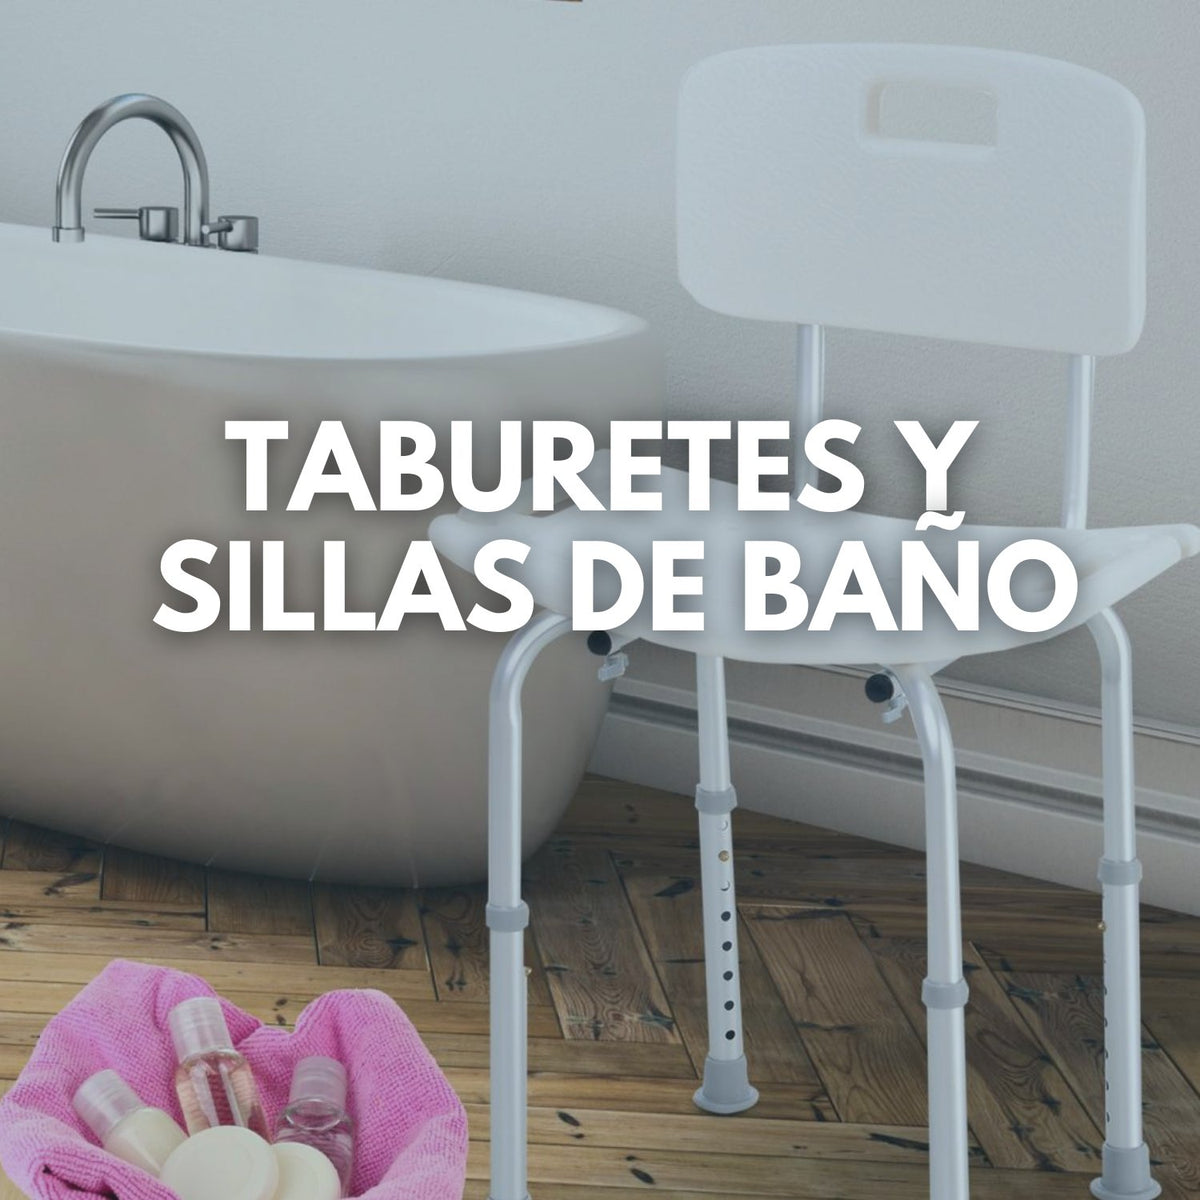 TABURETES / BANCOS DE BAÑO - TABURETES / BANCOS DE BAÑO de diseño